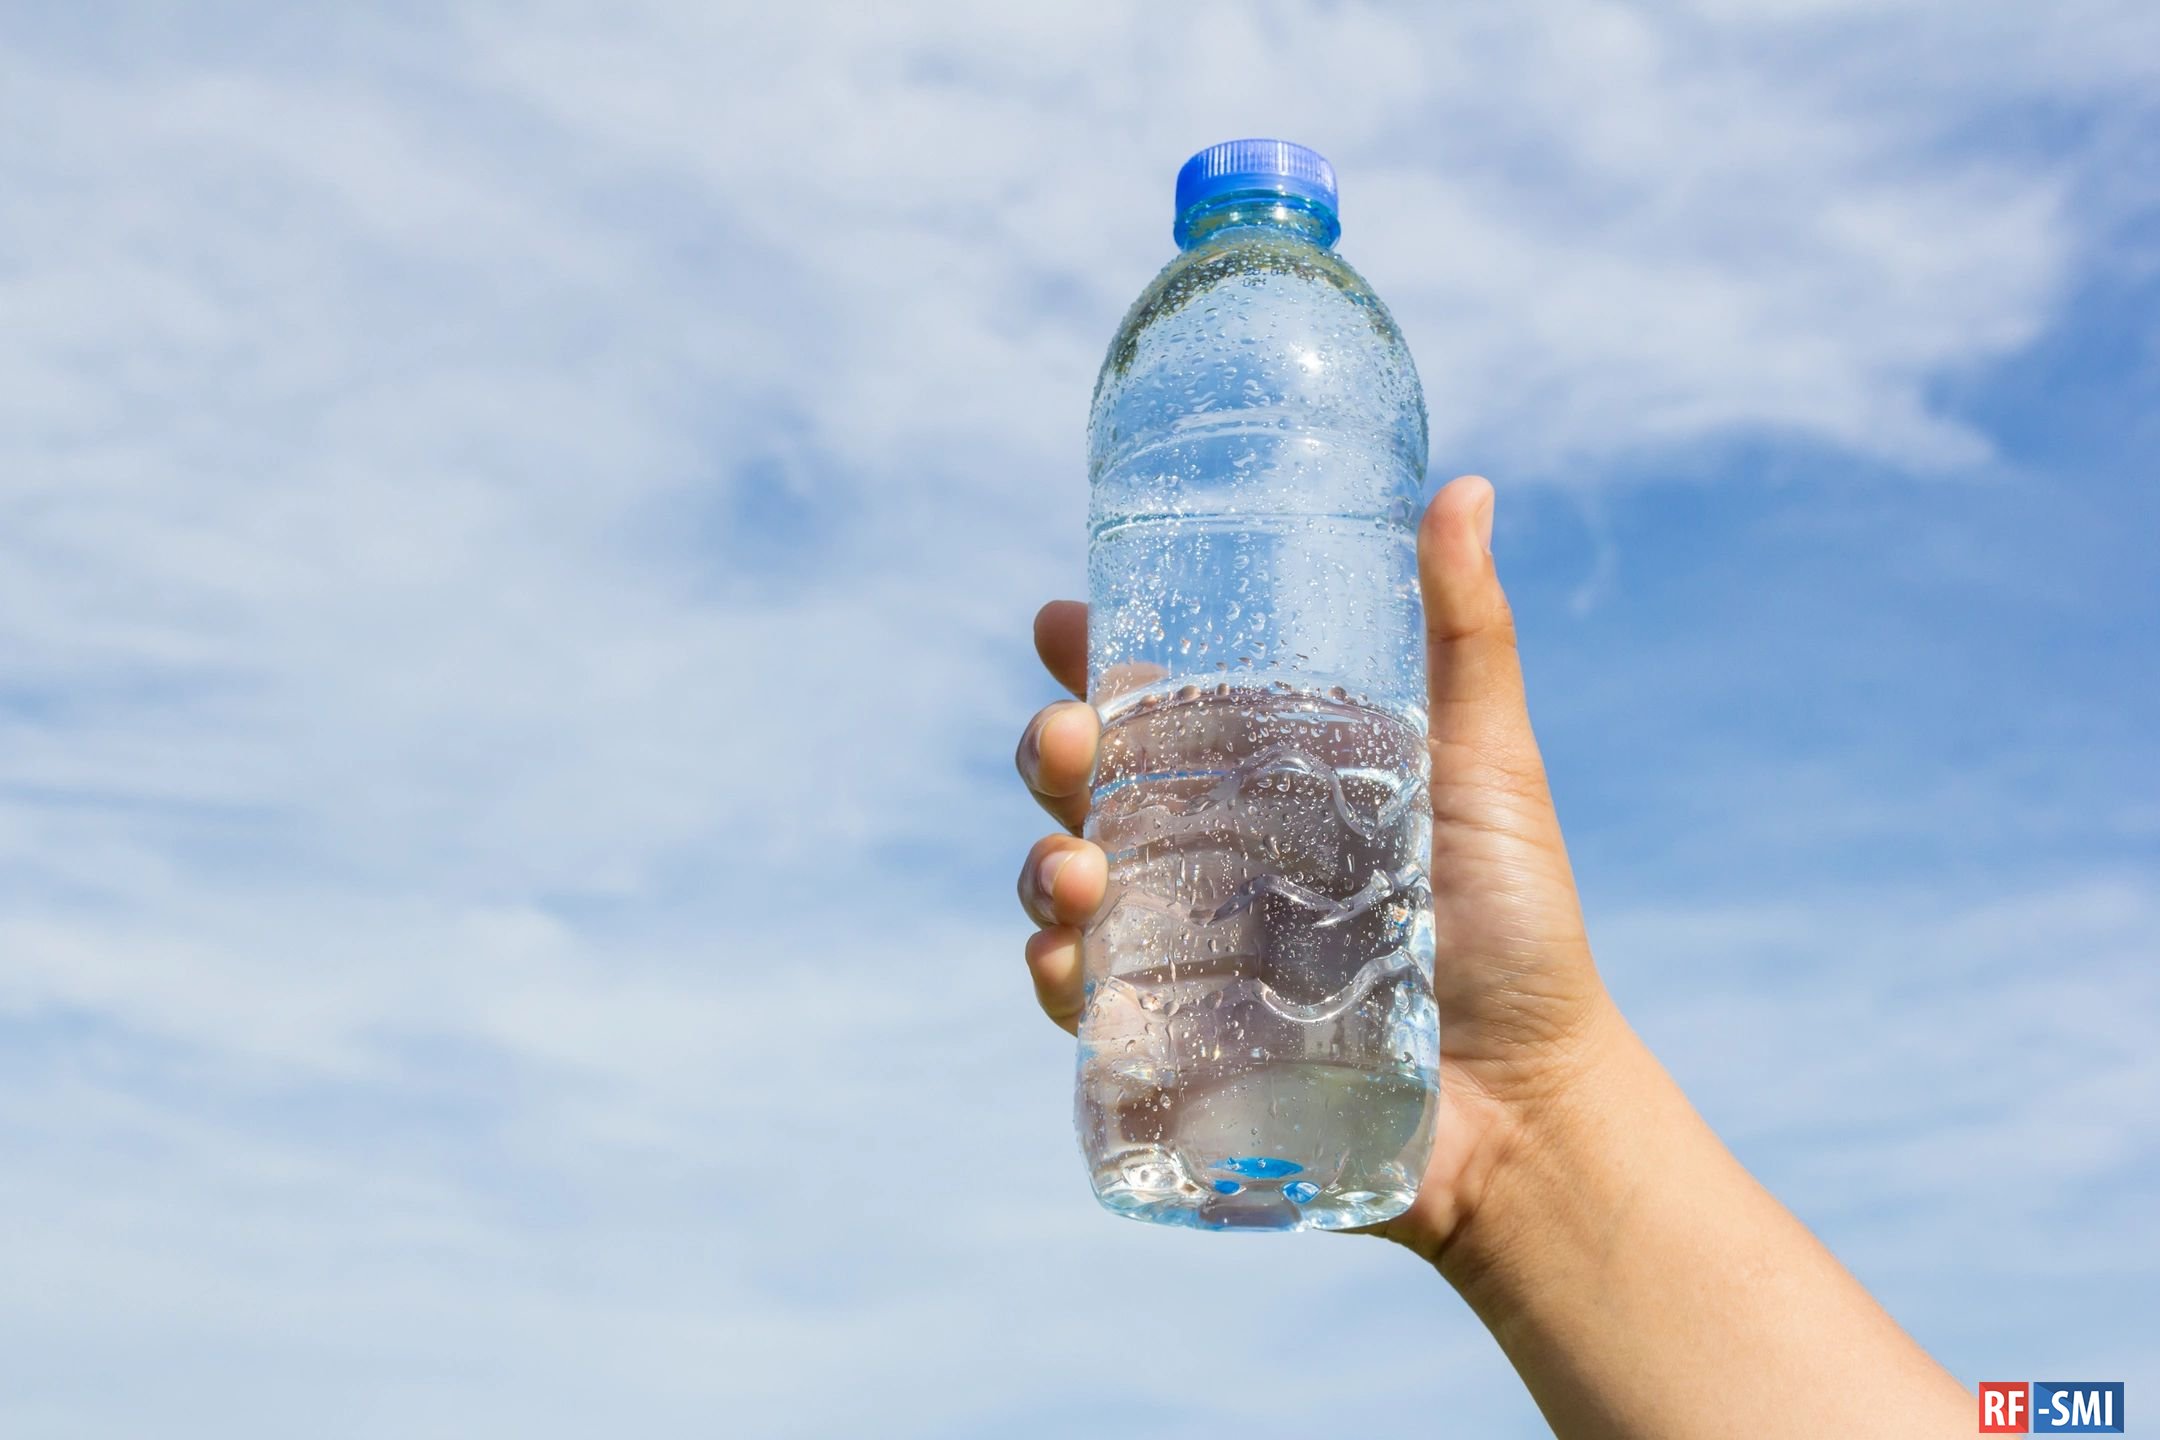 Бесплатная питьевая вода. Бутылка для воды. Пластиковая бутылка для воды. Бутылка воды в руке. Питьевые бутылочки для воды.